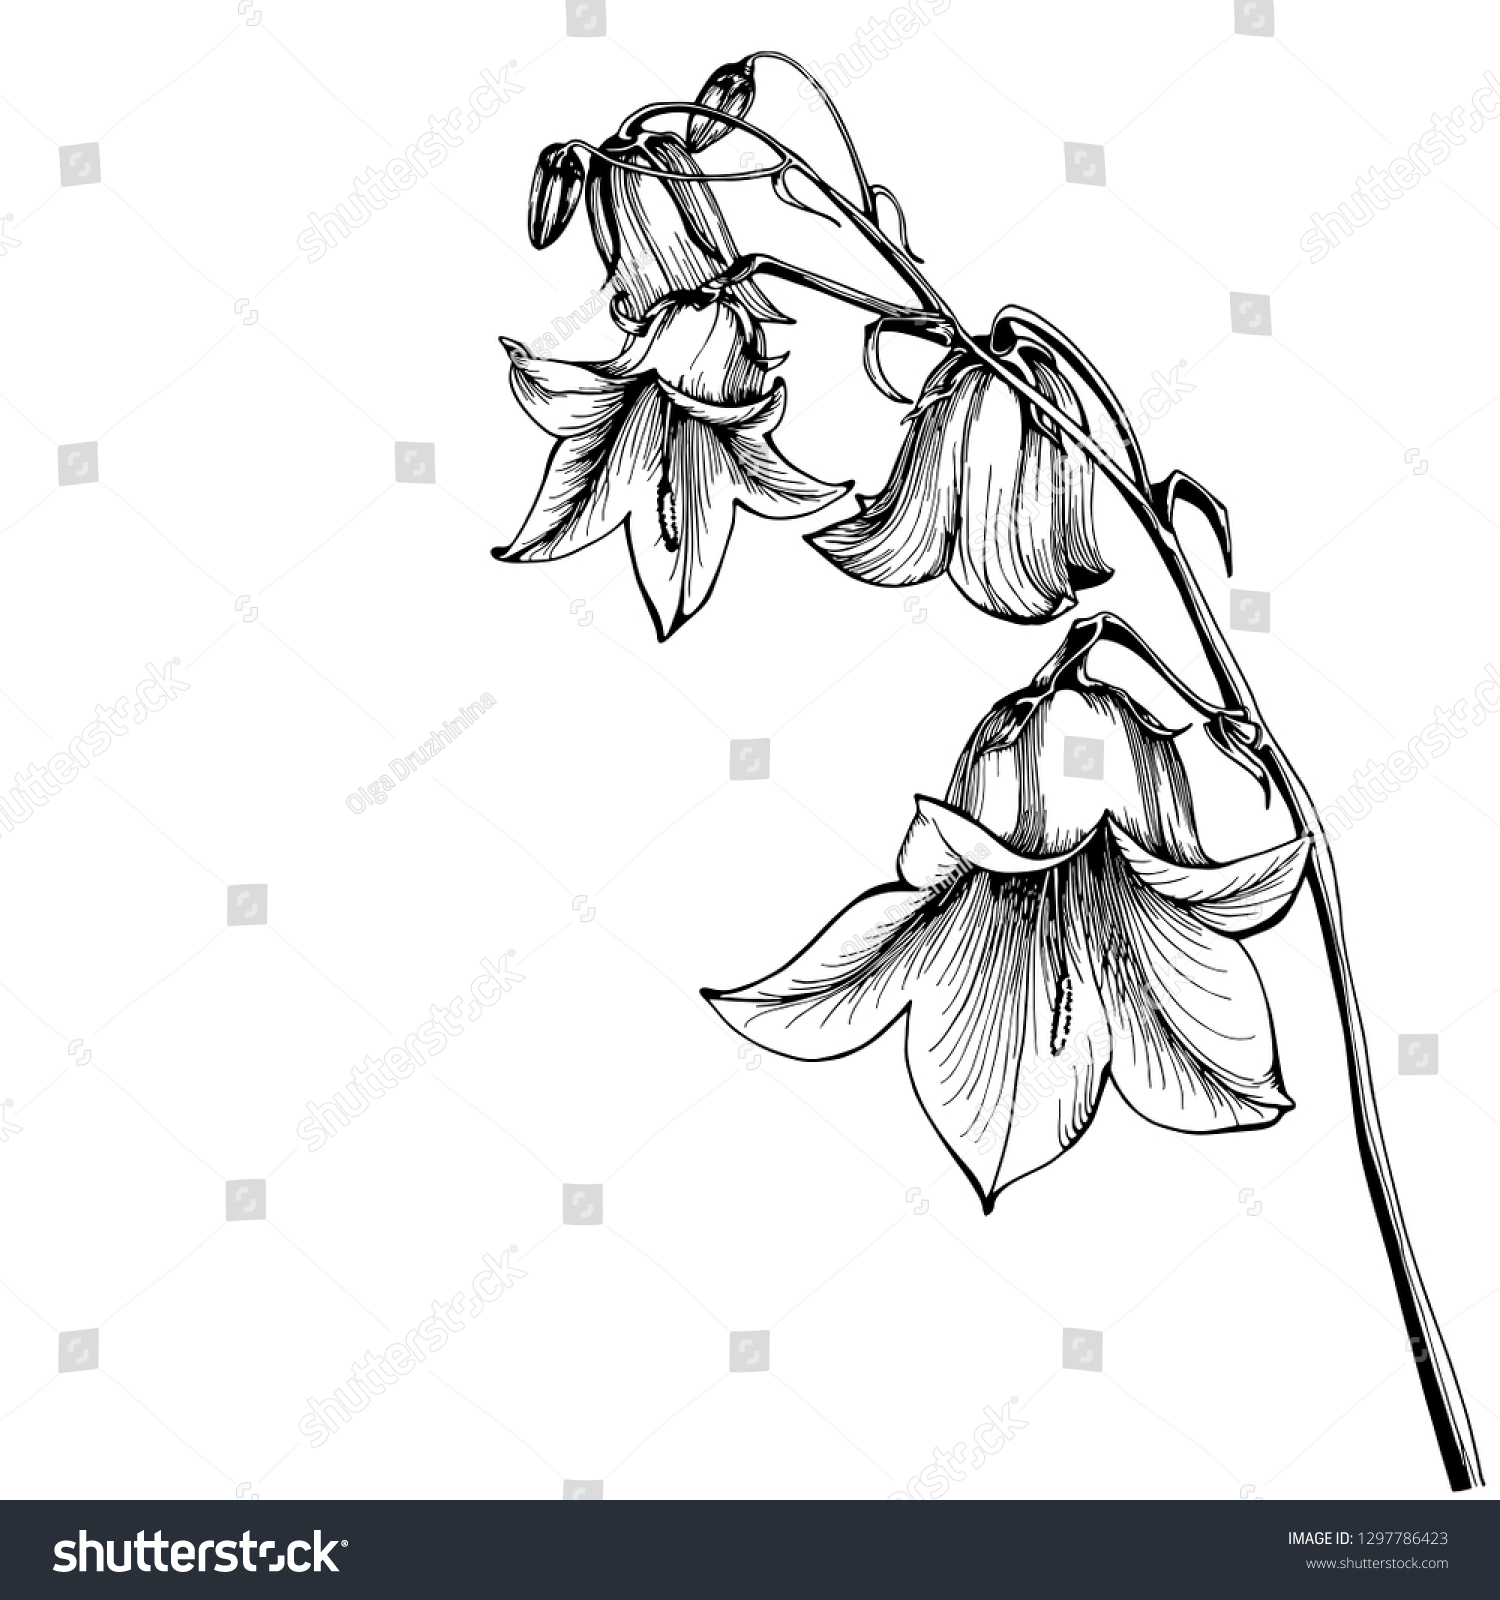 白い背景に美しいブルーベルの花 カンパニュラ ボタニカルイラストフリー手描き ベクターイラスト のベクター画像素材 ロイヤリティフリー